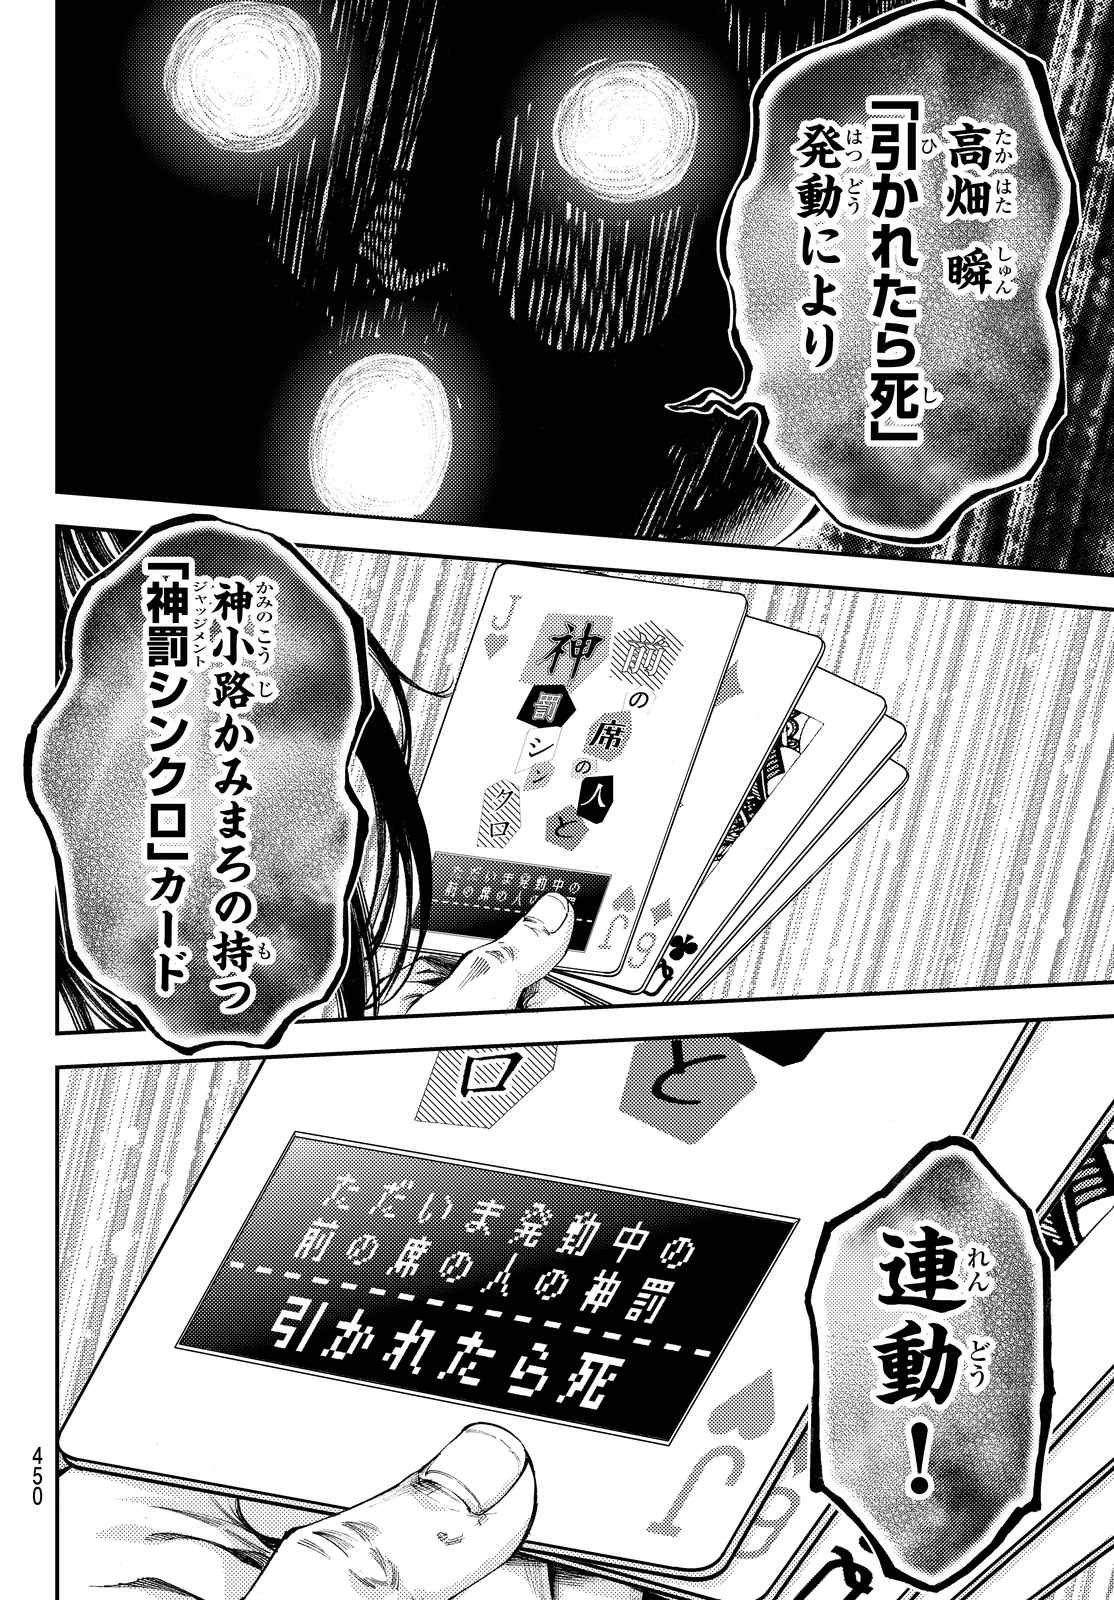 Kamisama no Ituori - Chapter 175 - Page 3